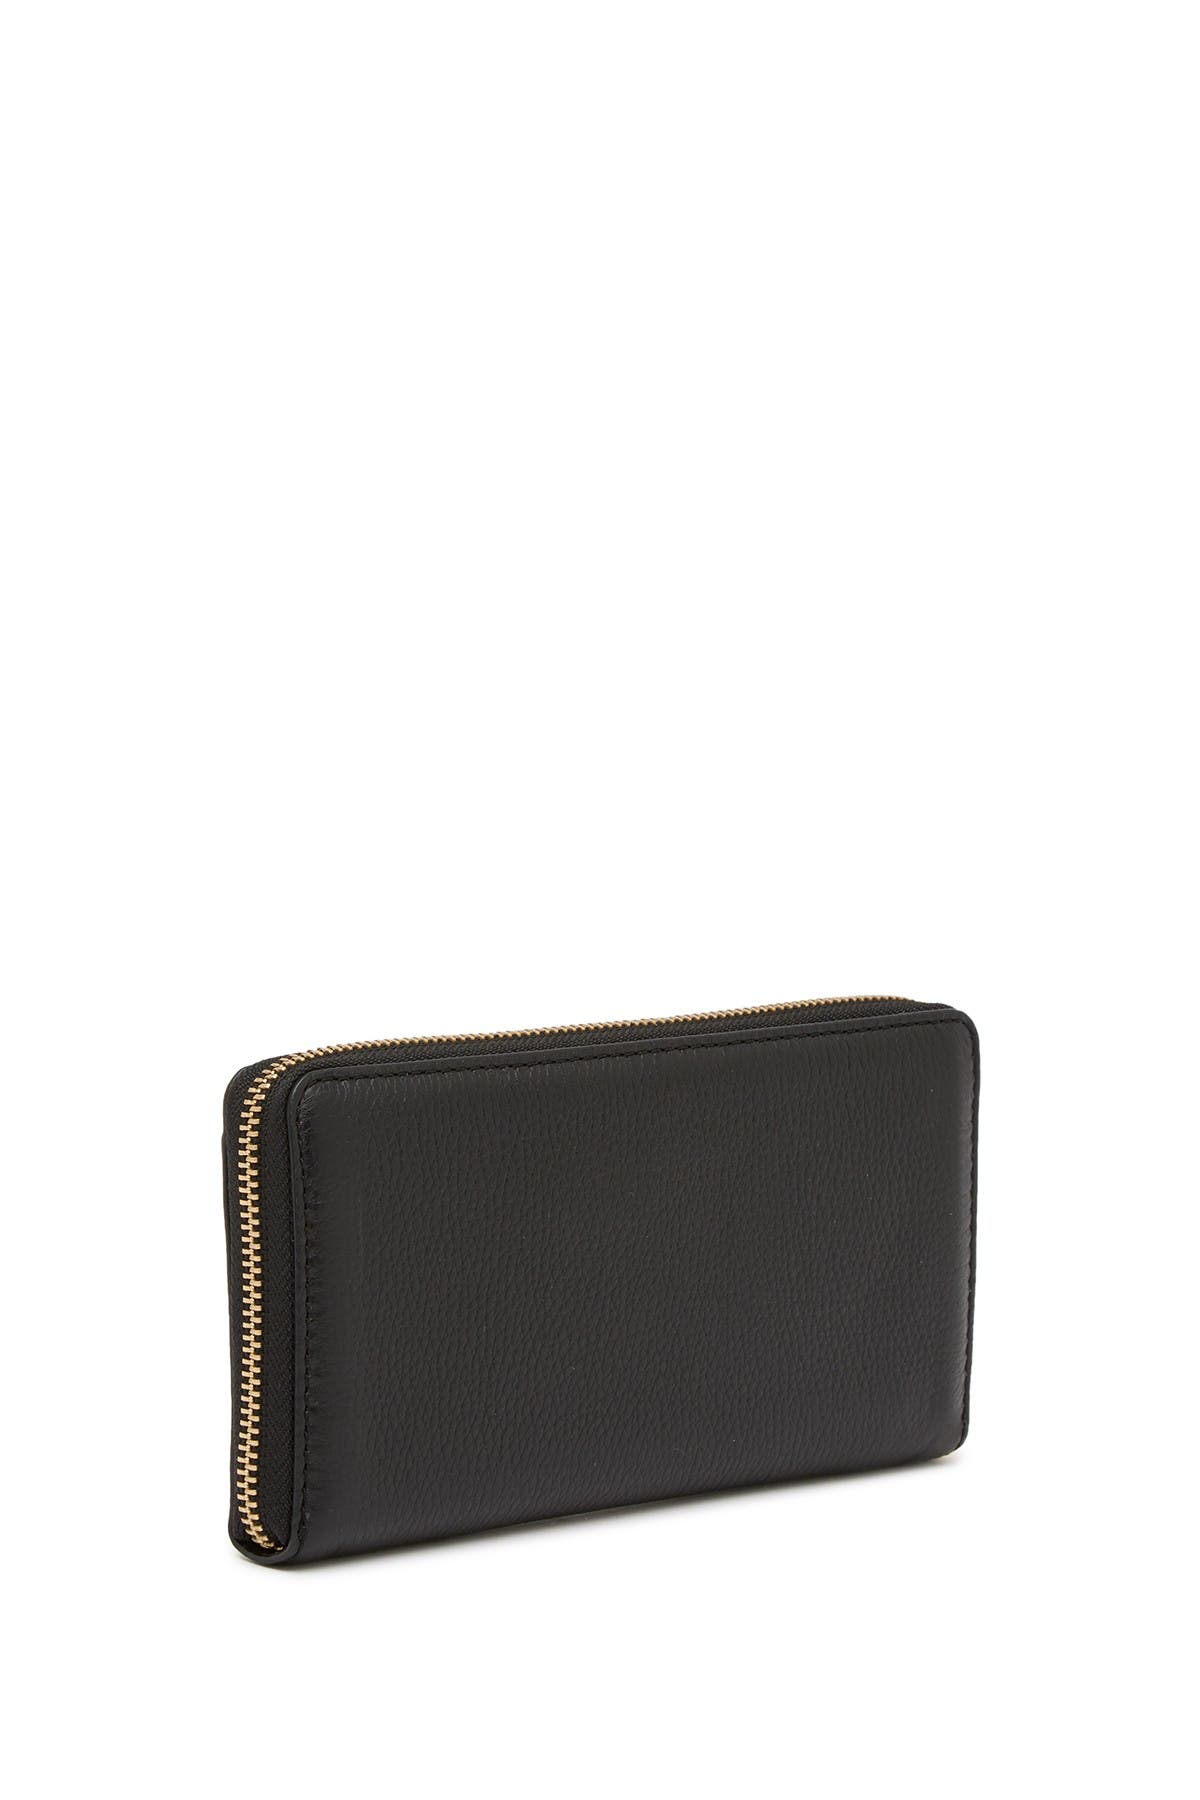 Marc Jacobs | Leather Vertical Zip-Around Wallet | Nordstrom Rack